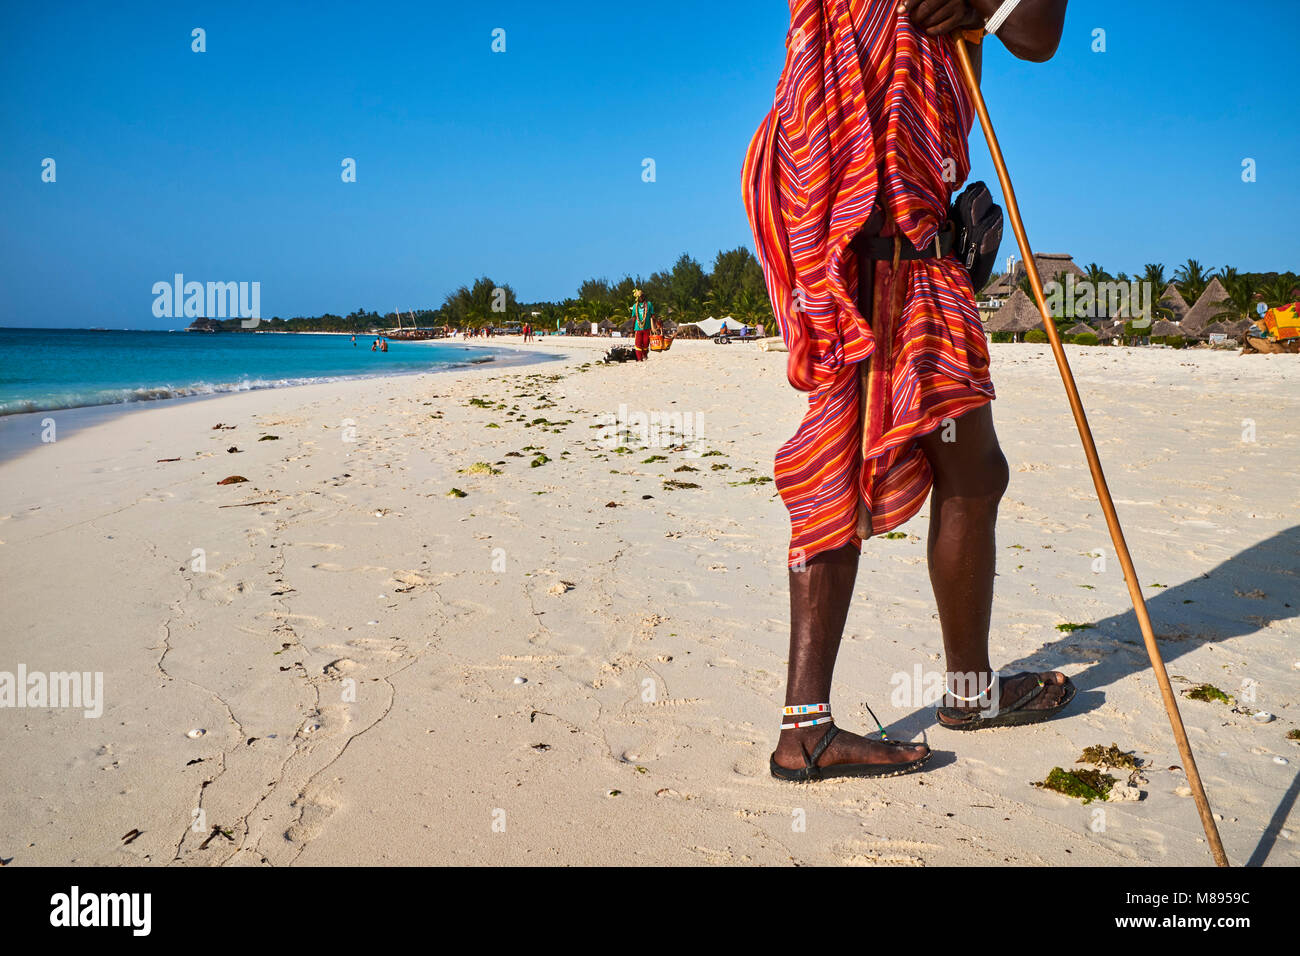 Tanzania, Zanzibar island, Unguja, Masai at Nungwi beach Stock Photo